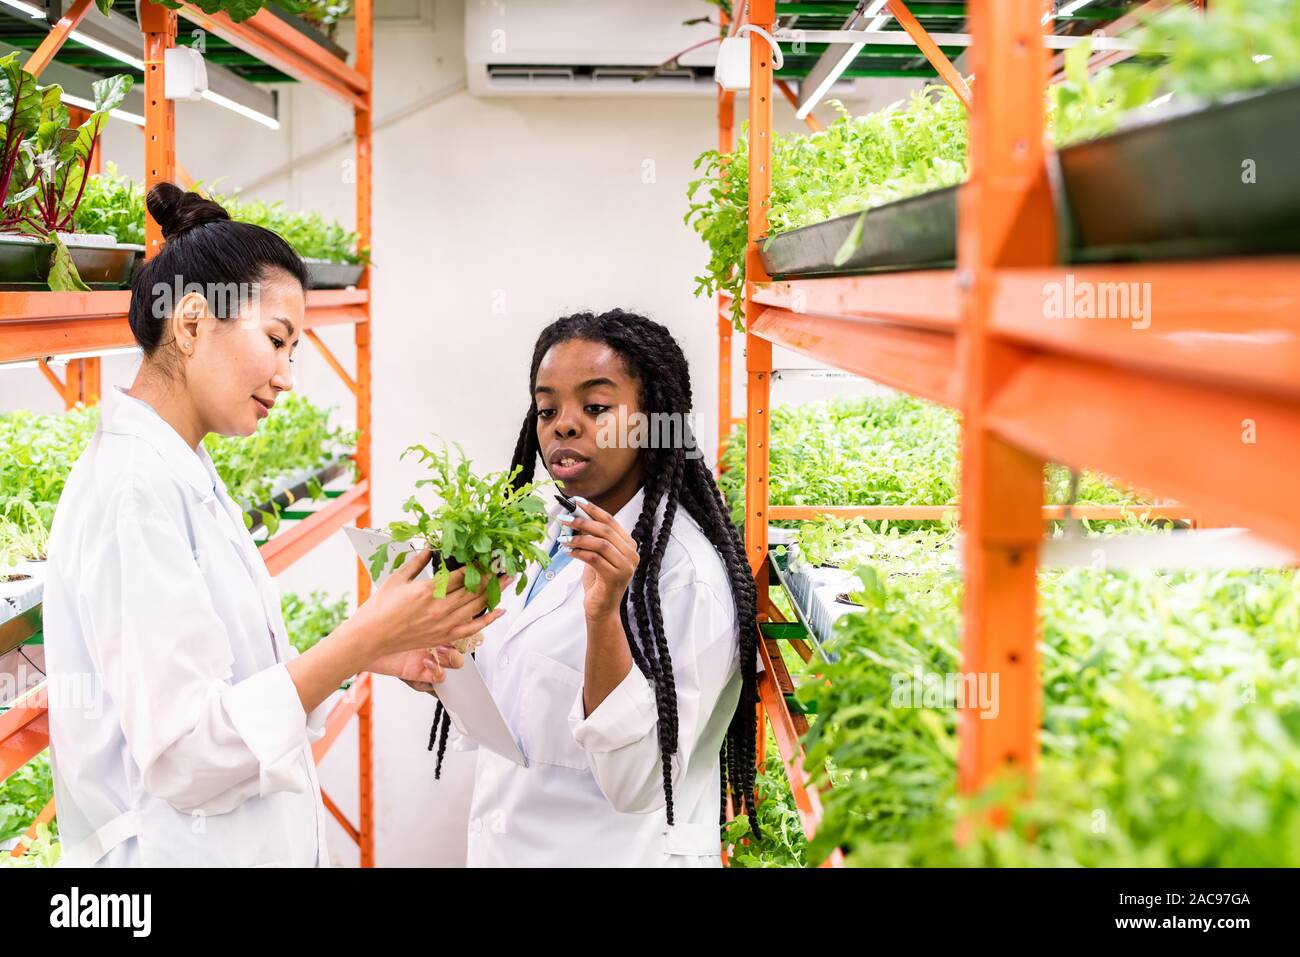 De jeunes Africains d'agronome pointing at green plants détenues par son collègue asiatique Banque D'Images